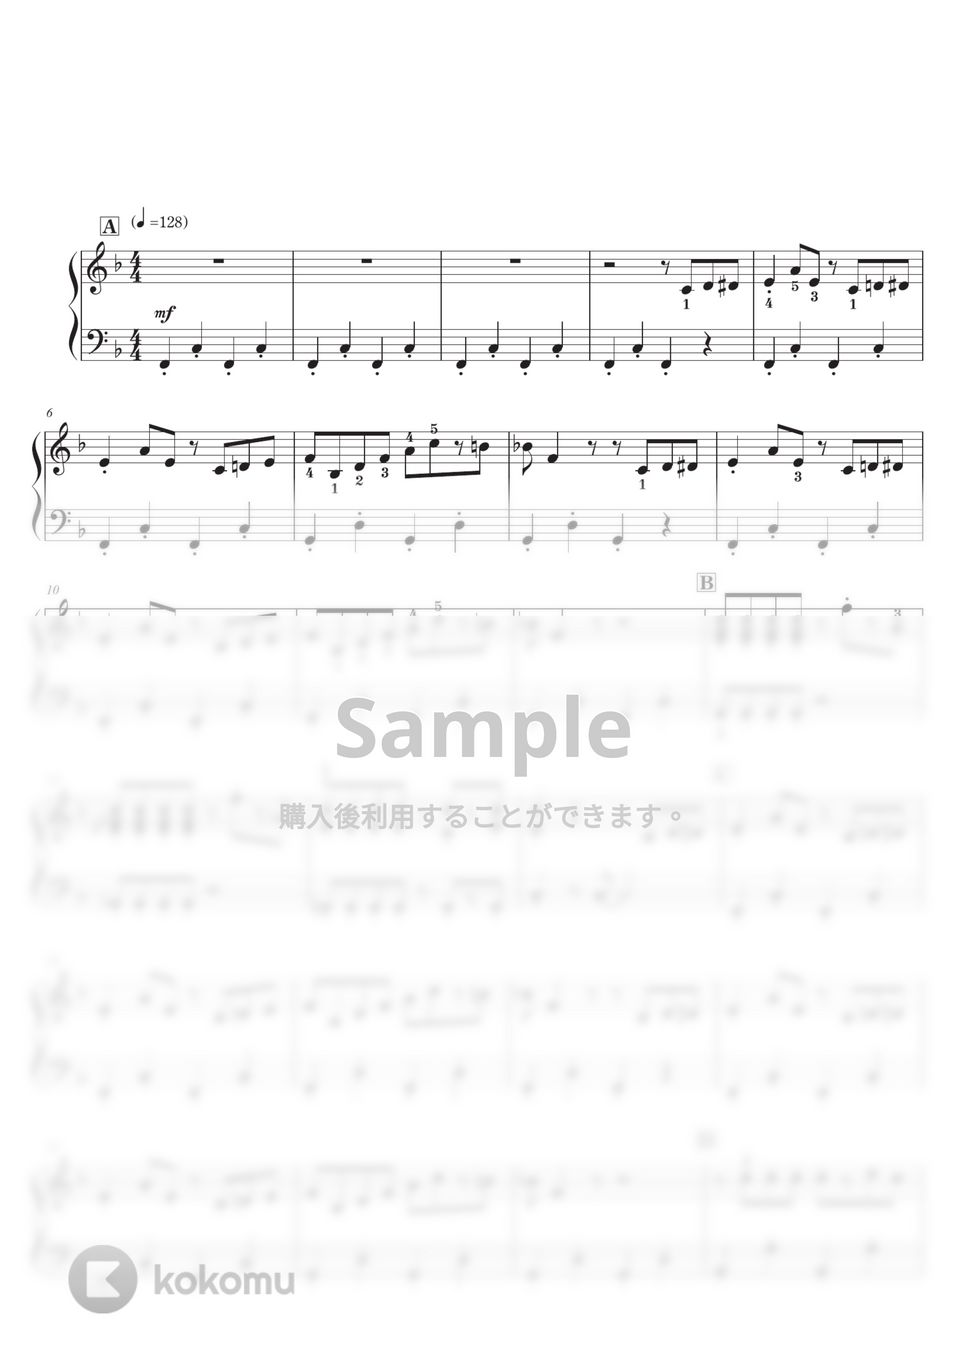 らき☆すた - 「らららコッペパン」/「らき☆すた」BGMより「フンフンフン♪だよ、らき☆すた」 ピアノソロ初級 by SugarPM